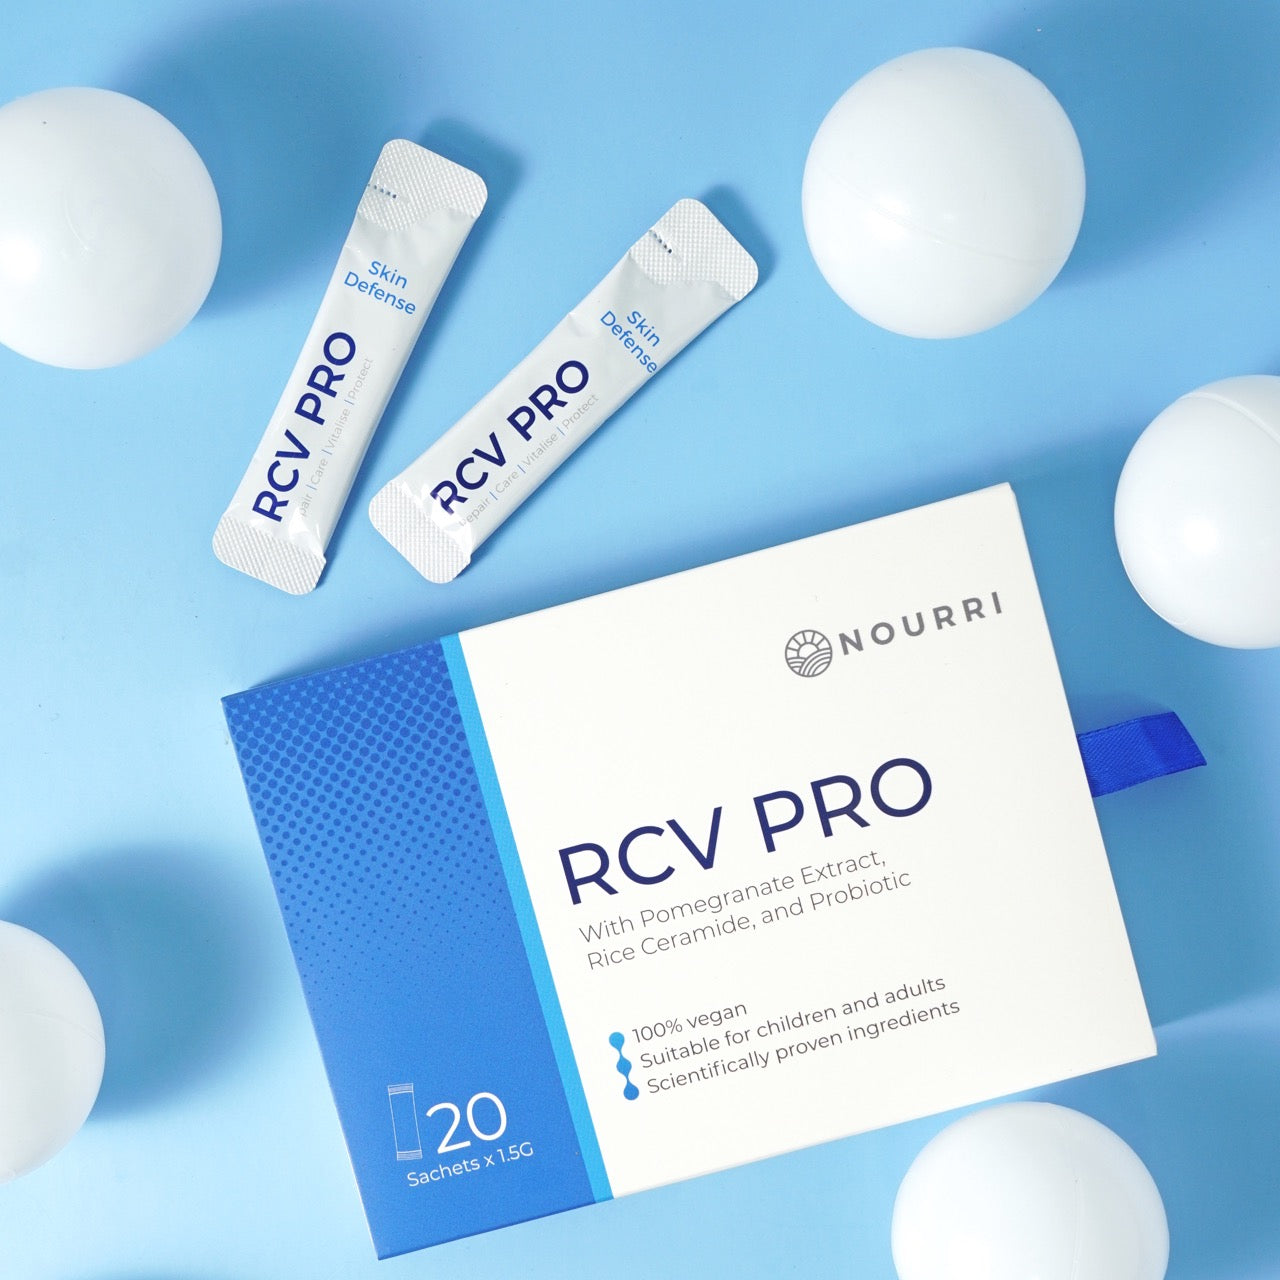 RCV PRO – The Revolutionary Skin Supplement